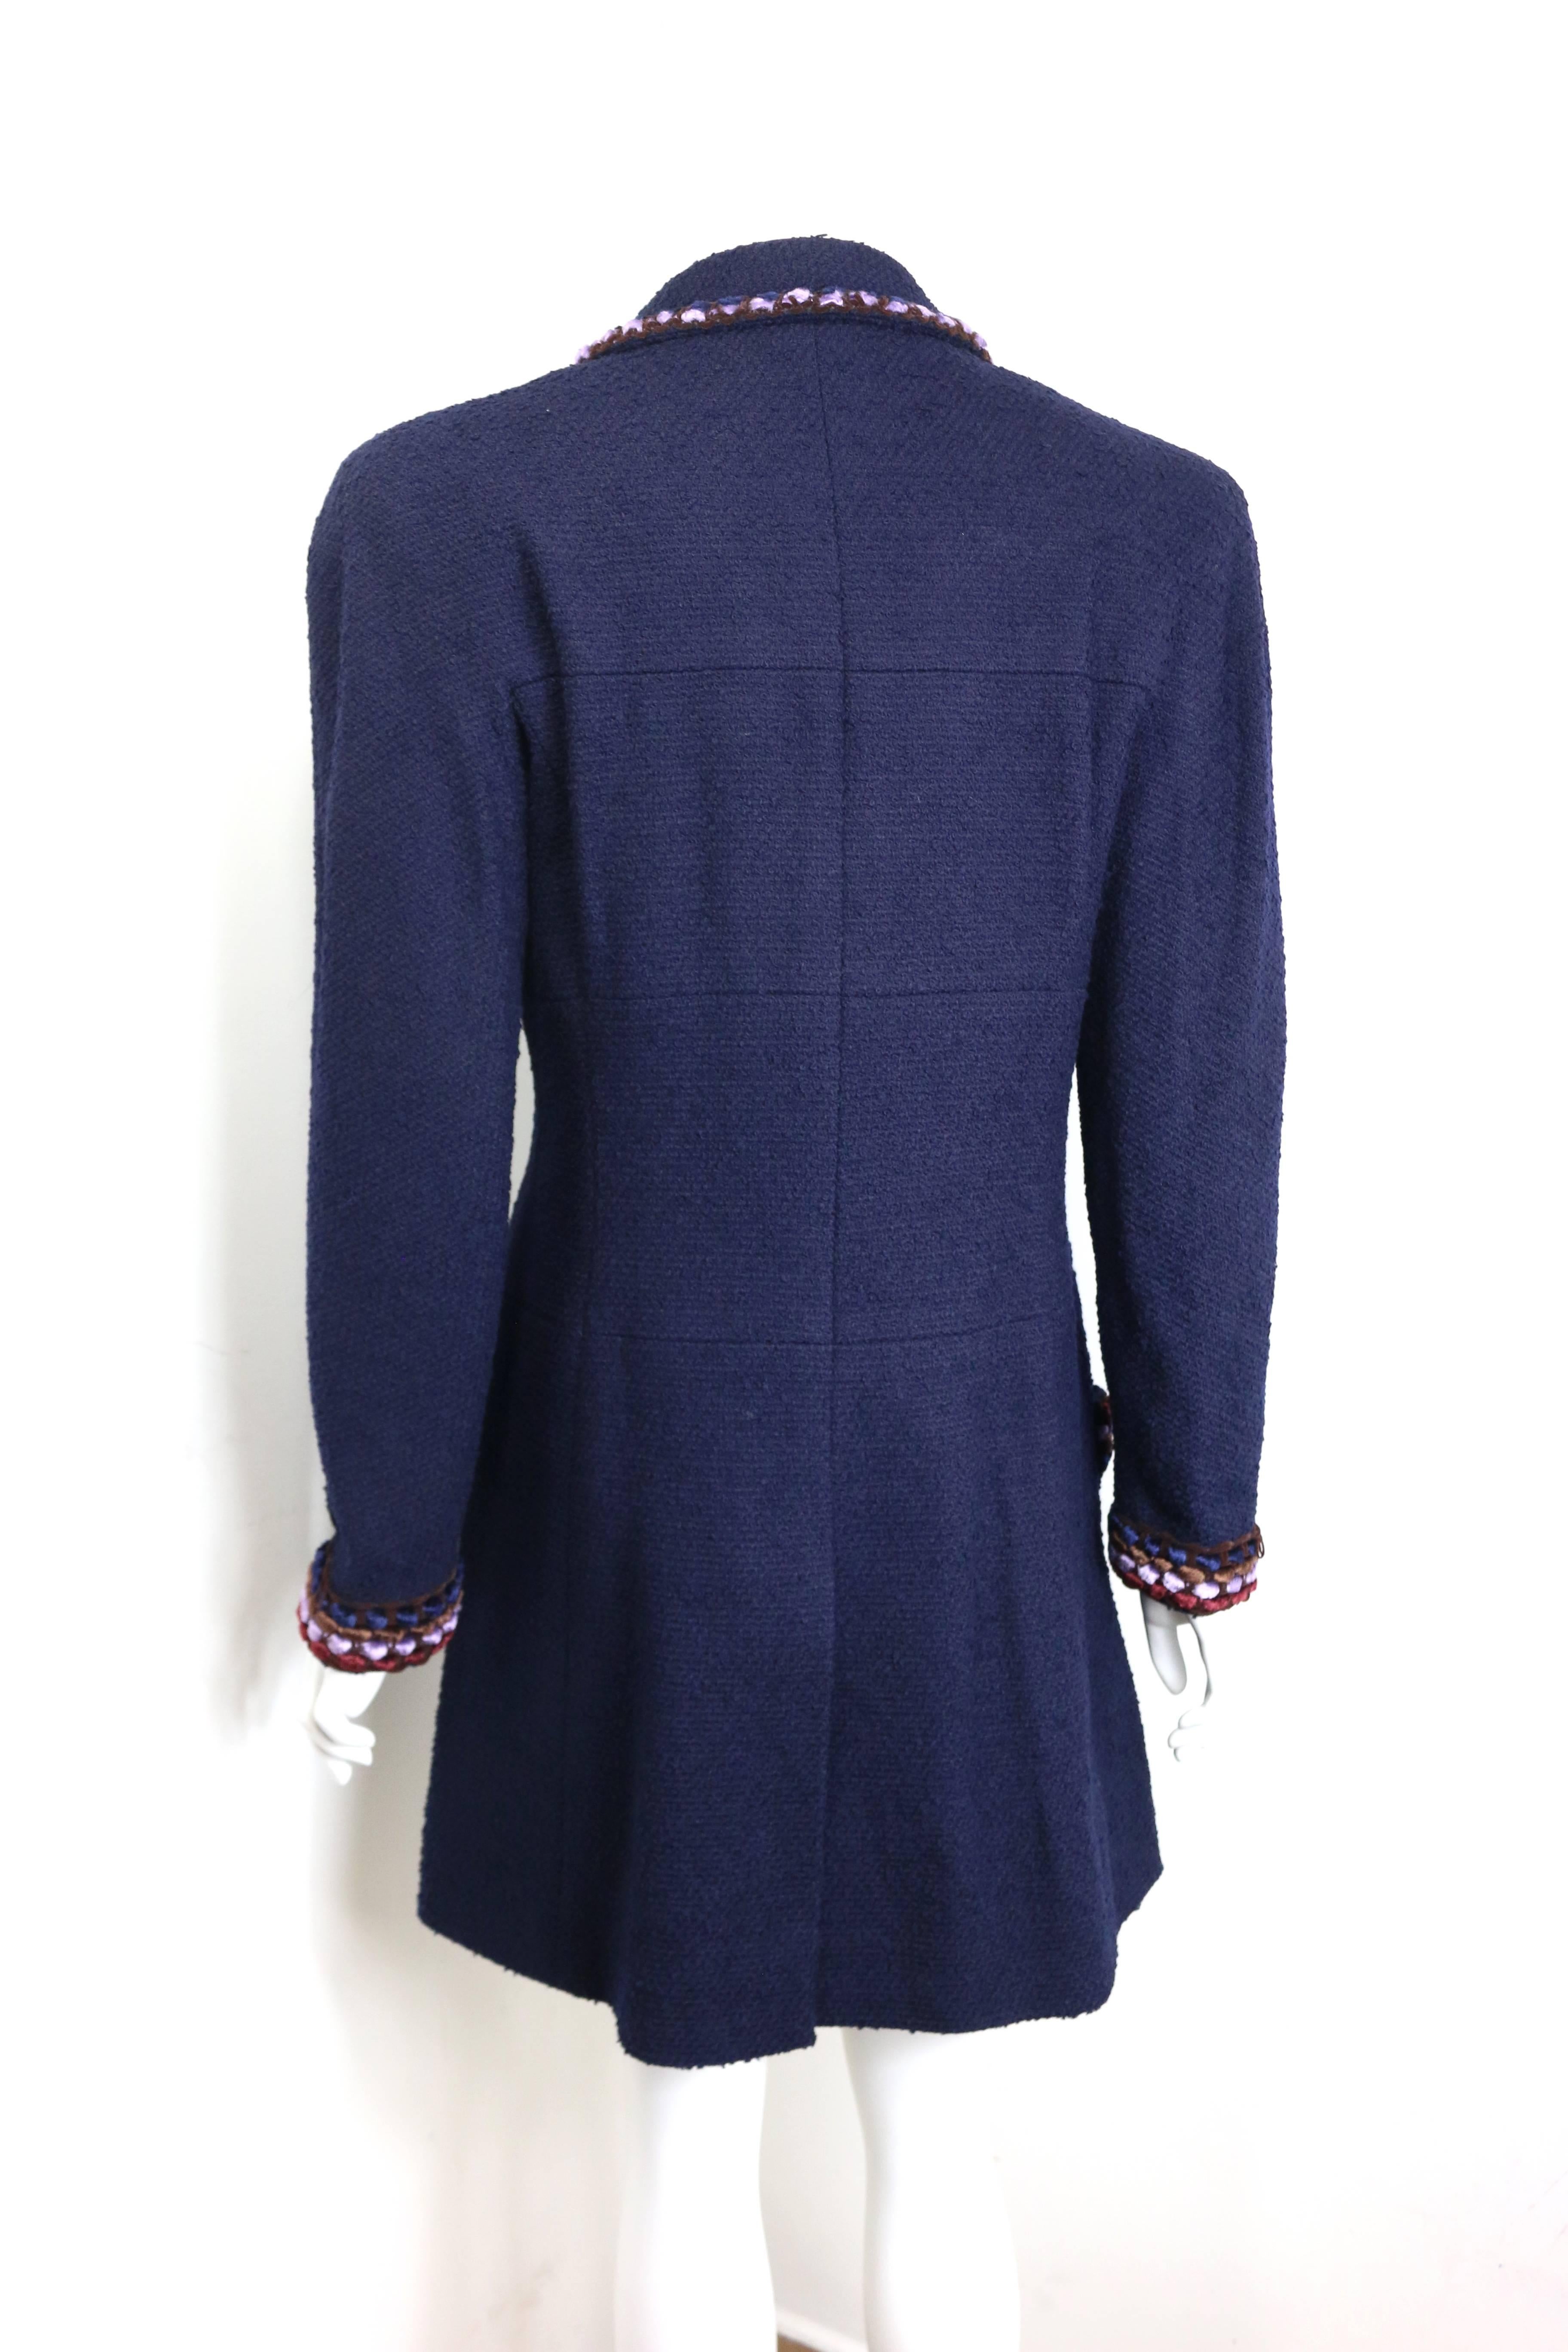 Noir Chanel - Manteau en tweed bleu marine bordé de chenille et de laine bouclée avec passepoil, Paris, automne 97 en vente